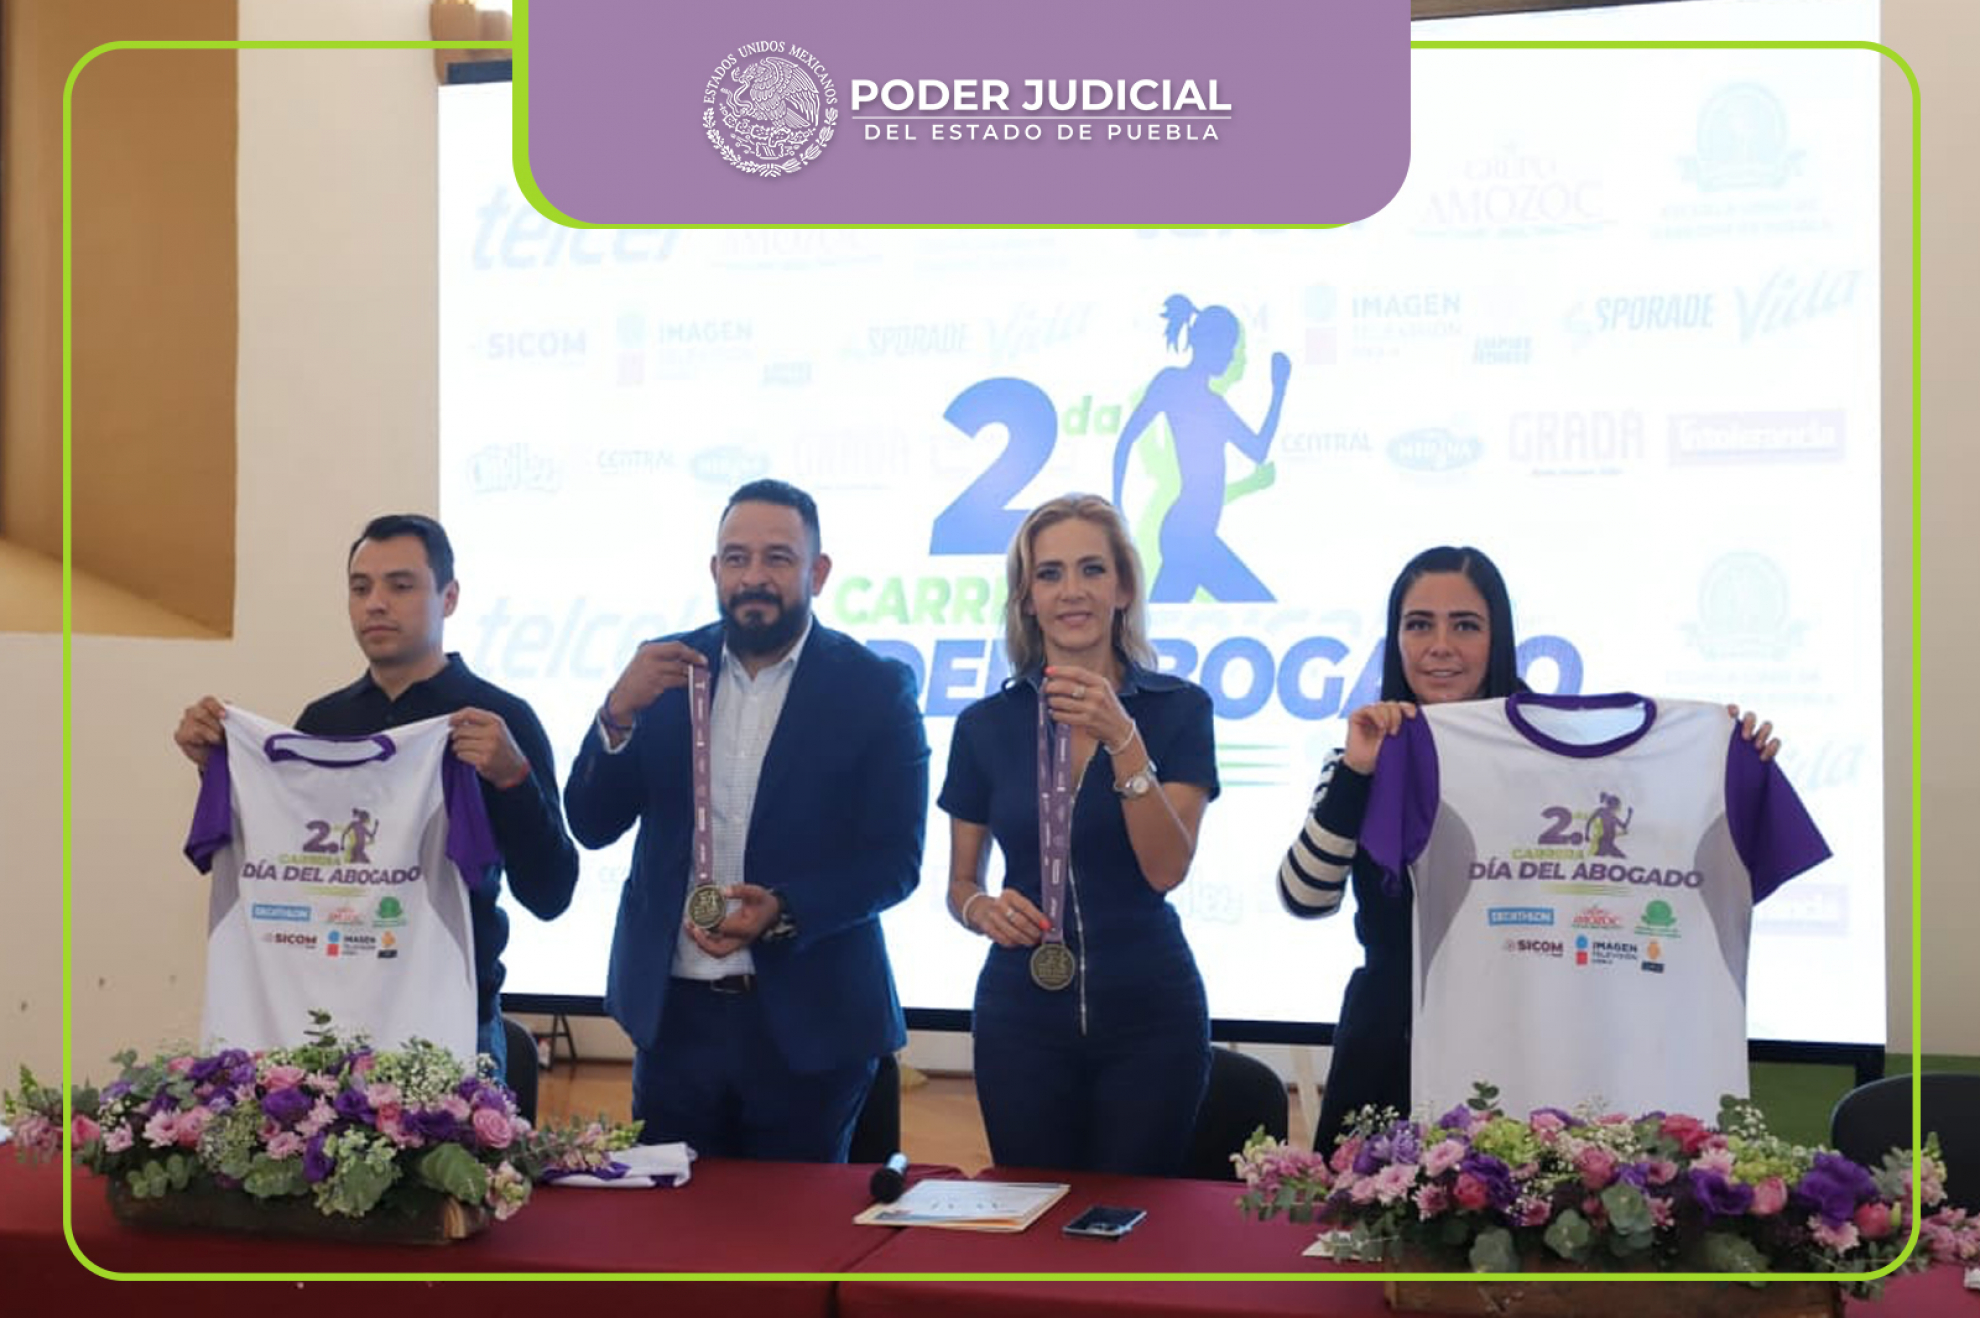 Poder Judicial del Estado de Puebla Invita a la Segunda Carrera del Día del Abogado.